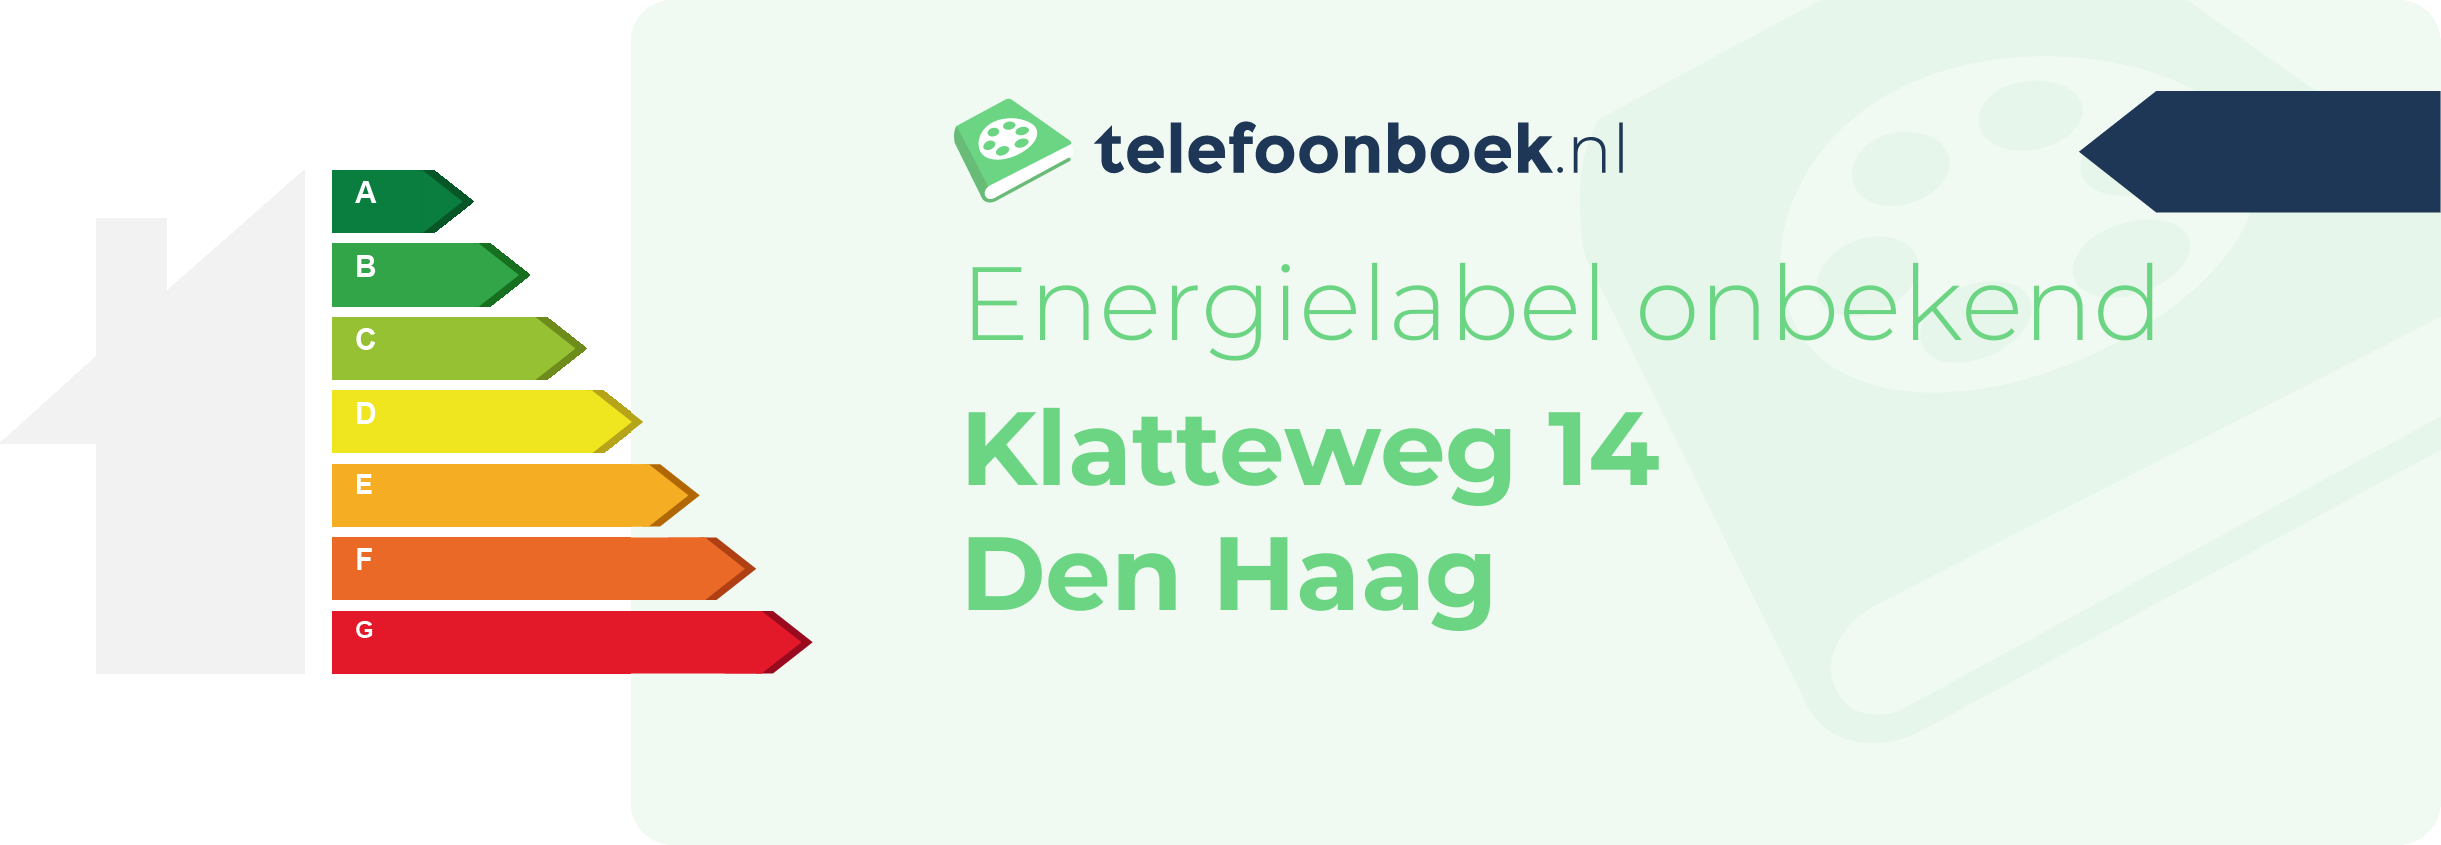 Energielabel Klatteweg 14 Den Haag